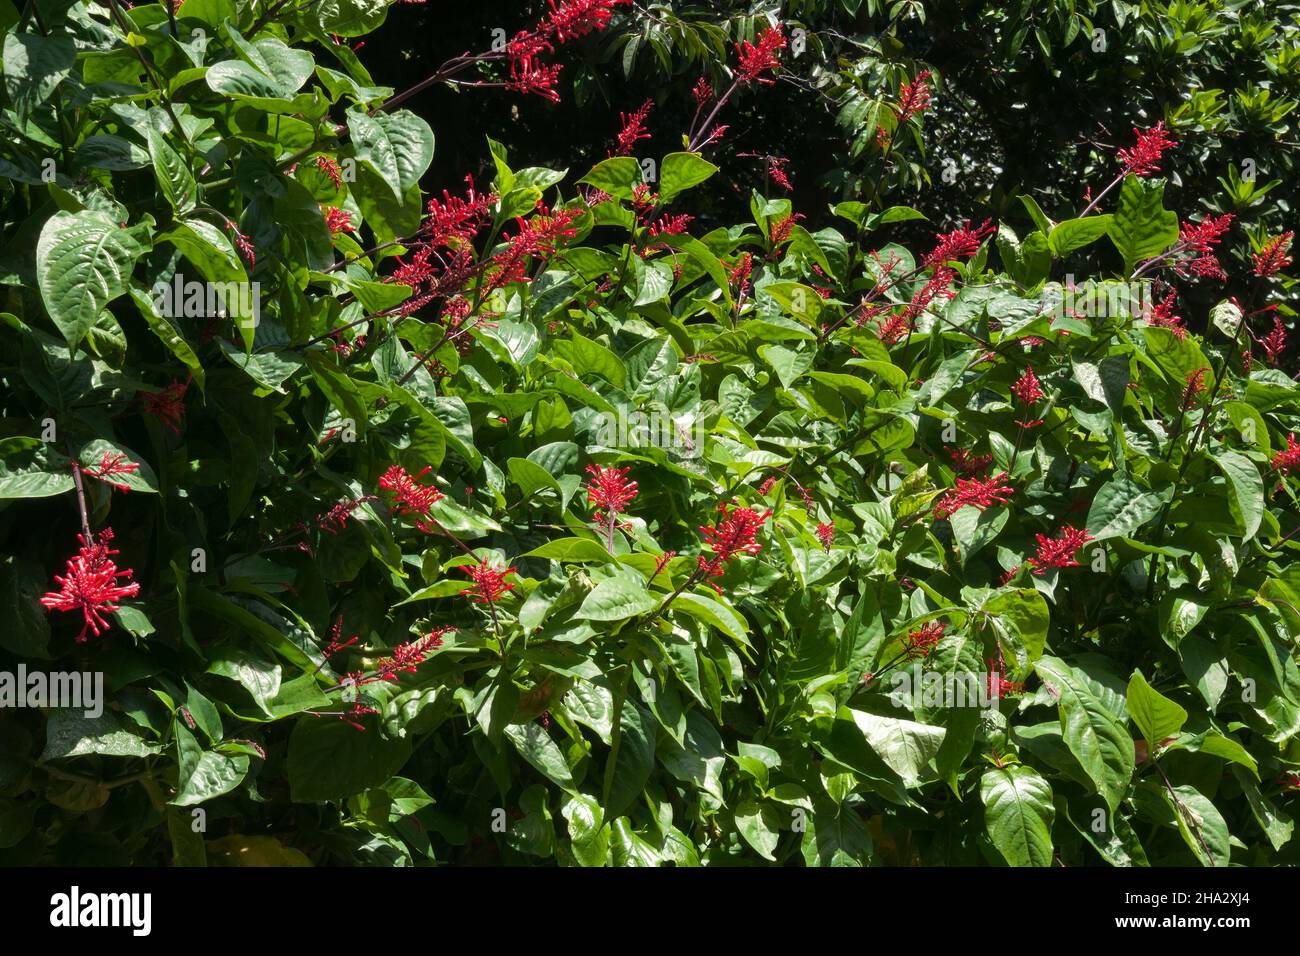 Sydney Australien, Odontonema tubaeforme oder Firespike Strauch mit roten Blüten Stockfoto